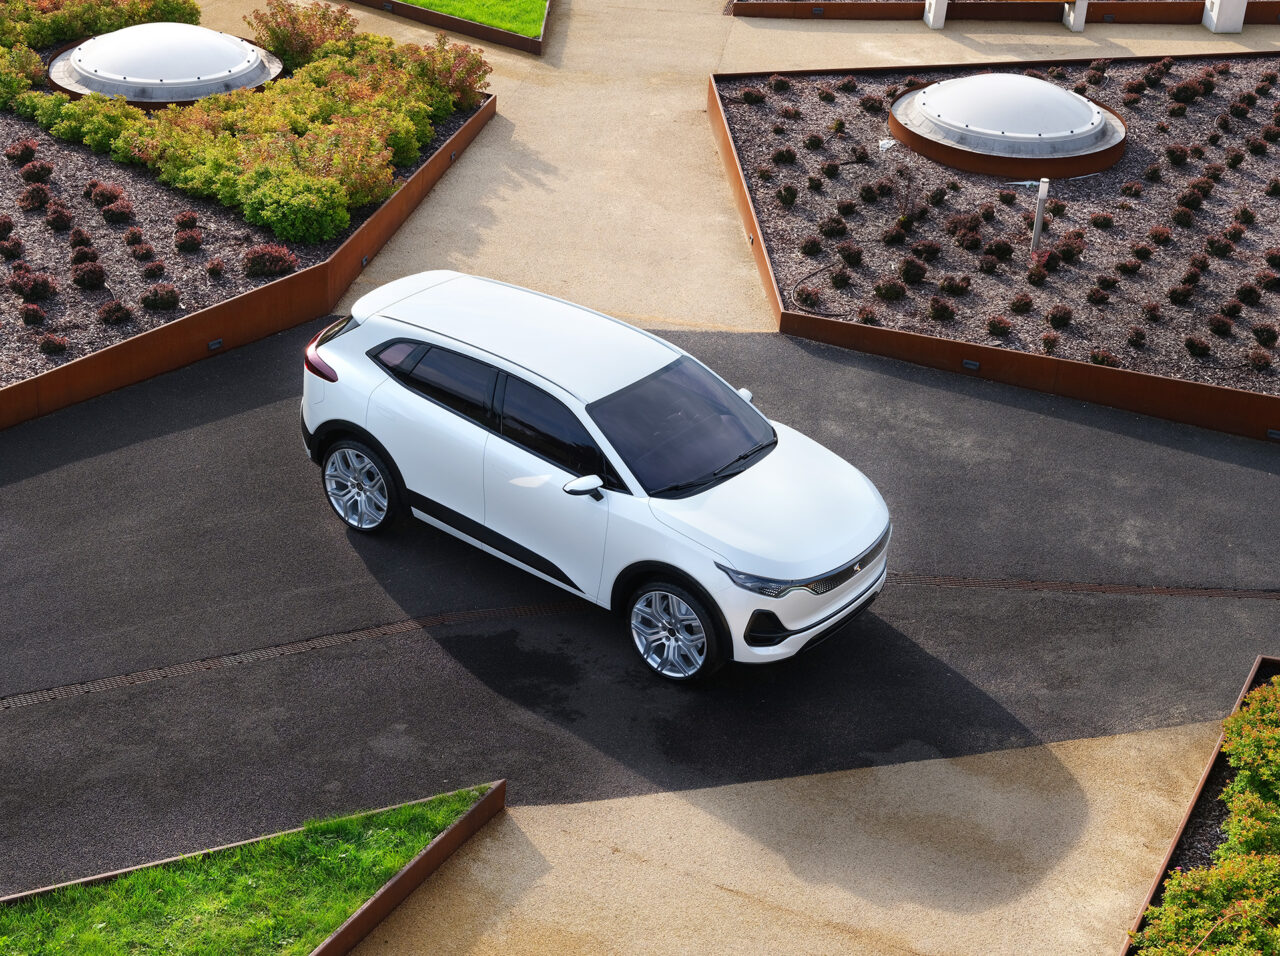 Biały samochód elektryczny Izera zaparkowany na betonowym parkingu obok zielonych dachów z roślinnością, widok z góry.